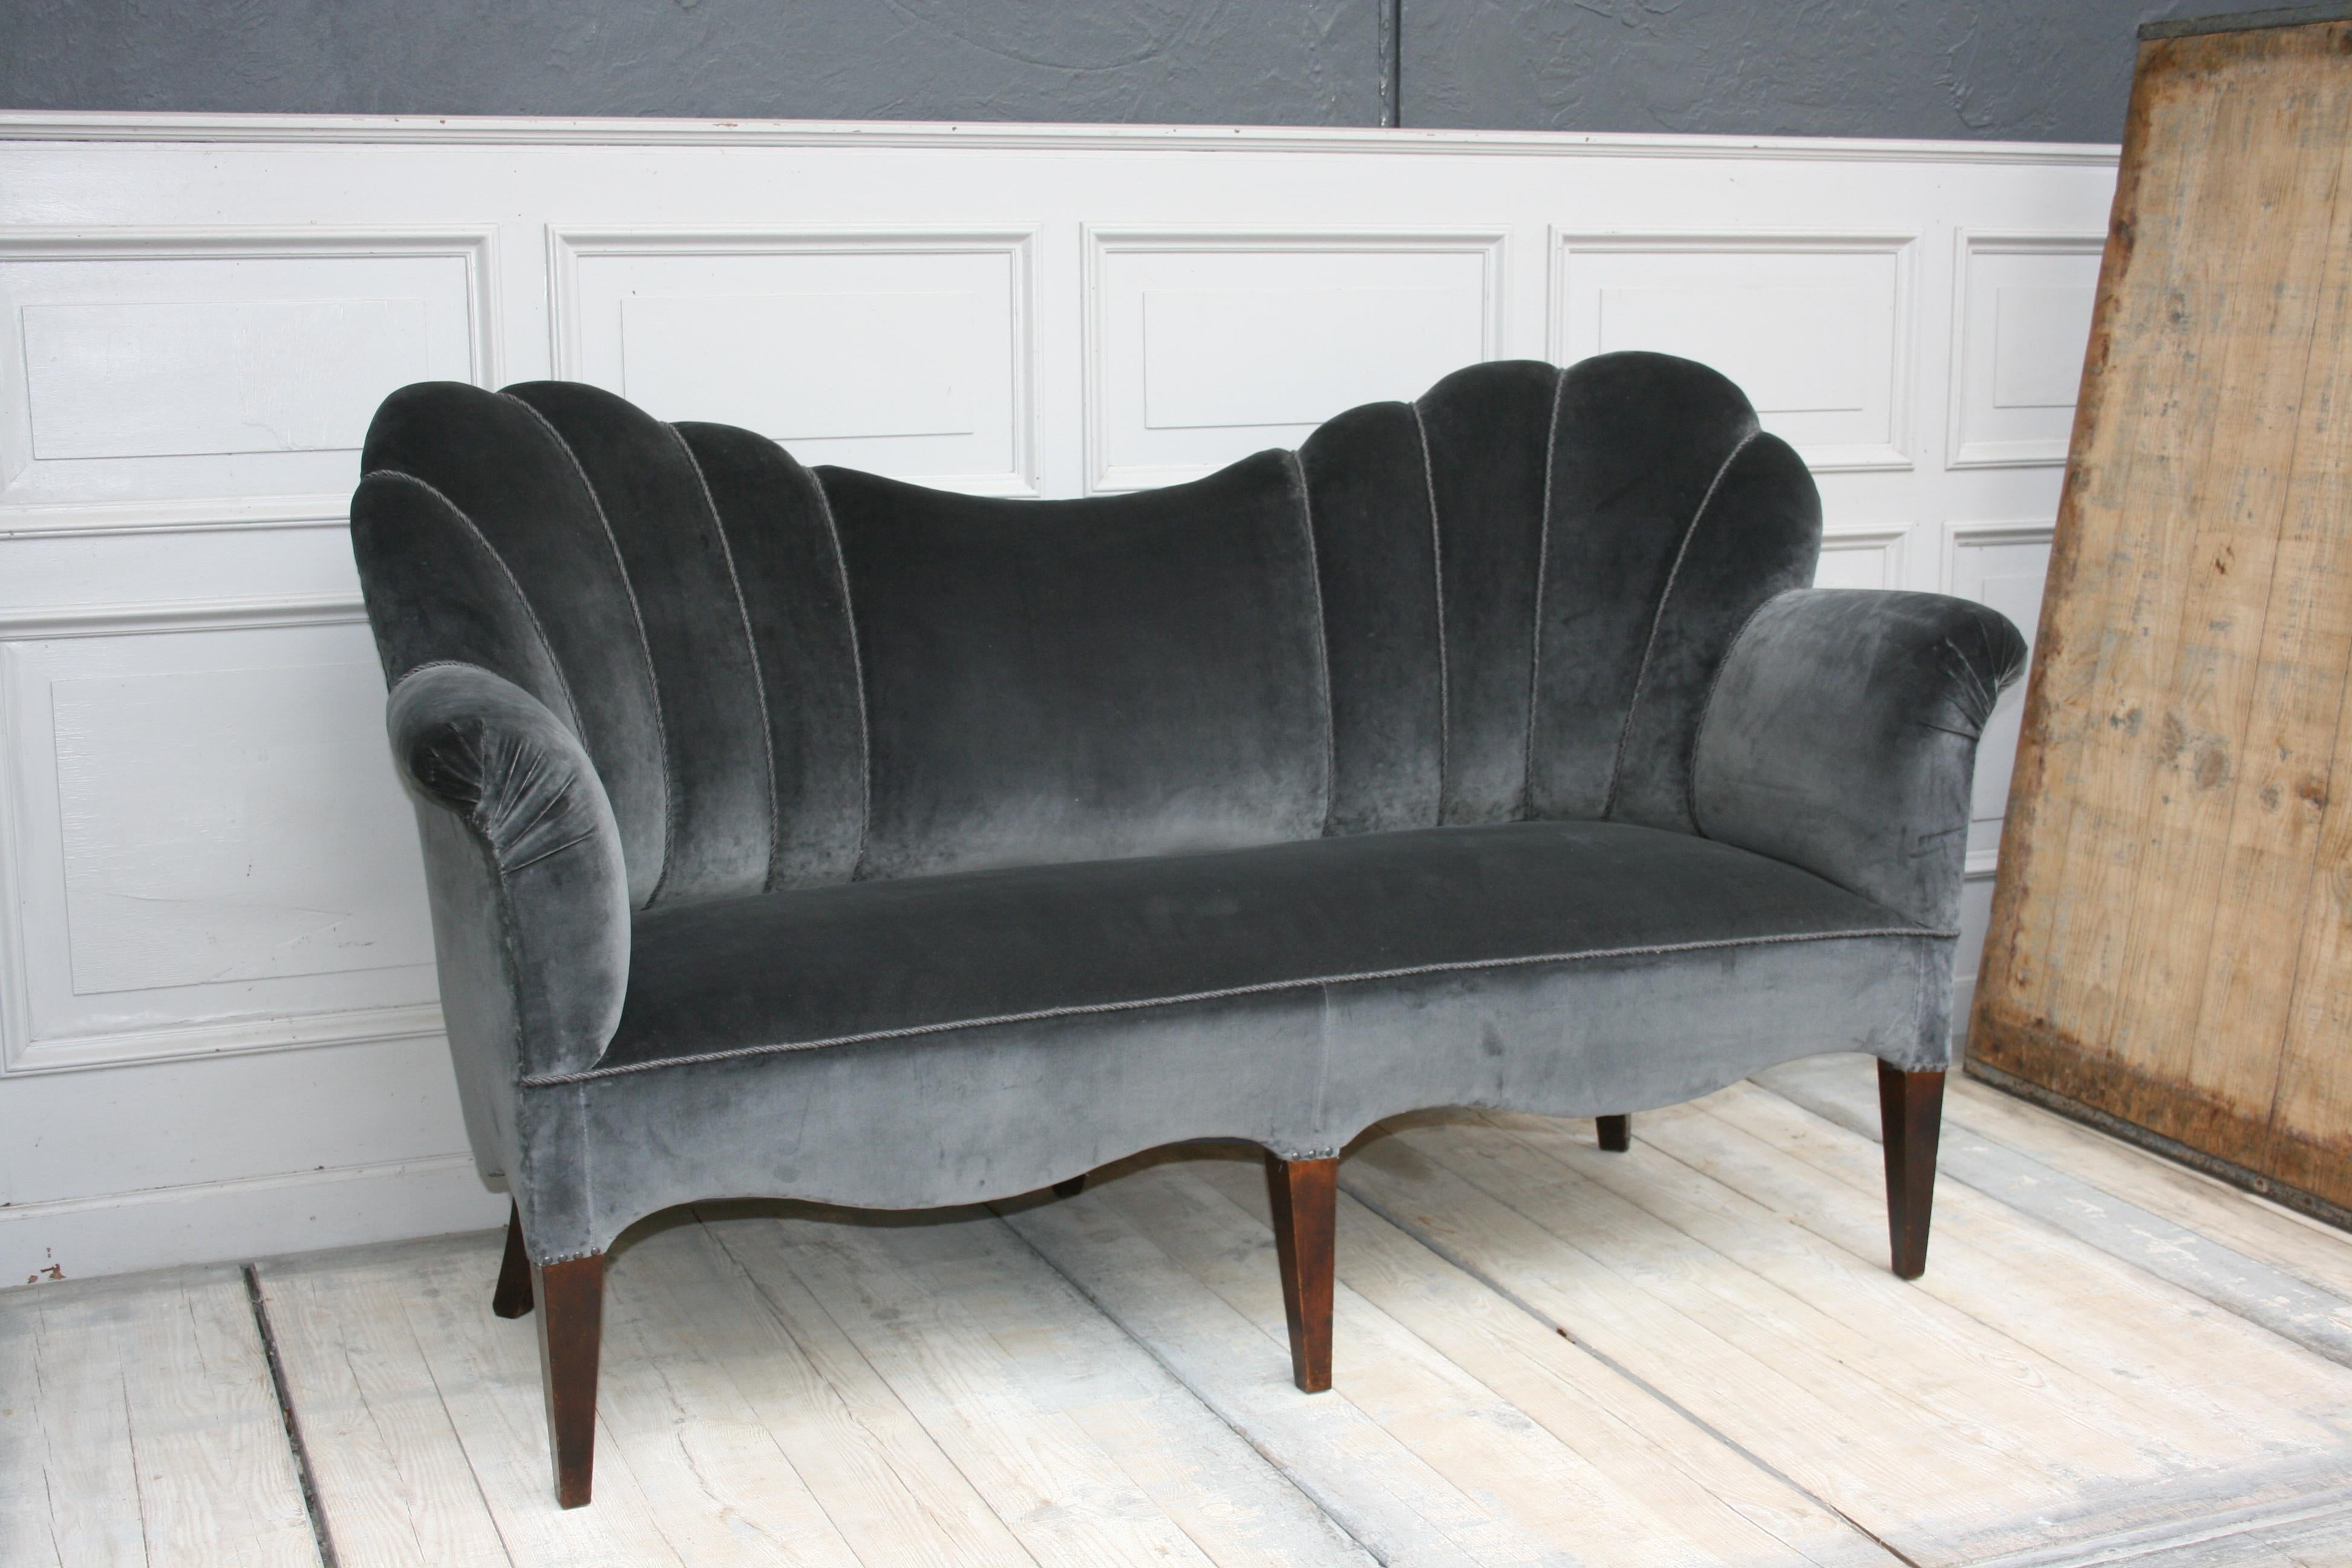 German Art Deco Sofa, 1930s, Newly Upholstered in Gray Velvet Fabric